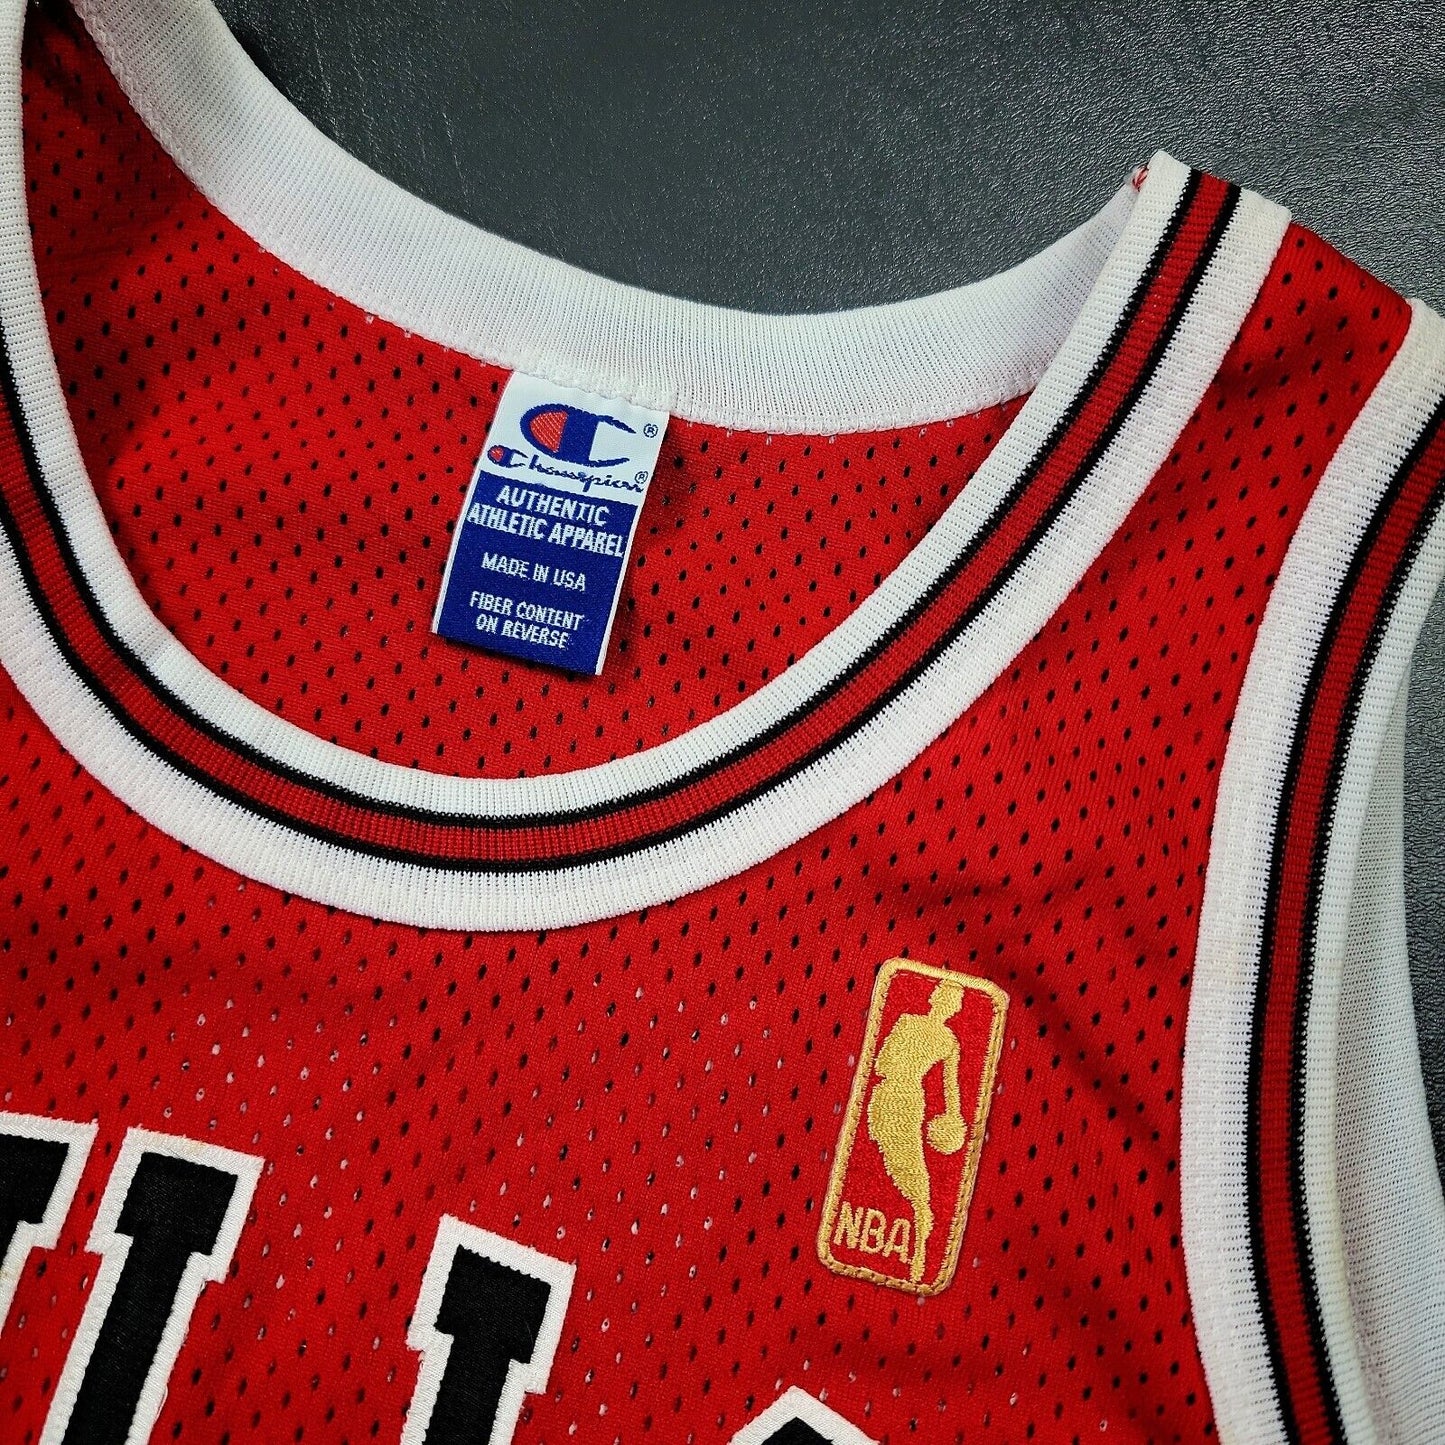 100% Authentic Michael Jordan Vintage Champion 96 97 Bulls Jersey Size 48 XL L